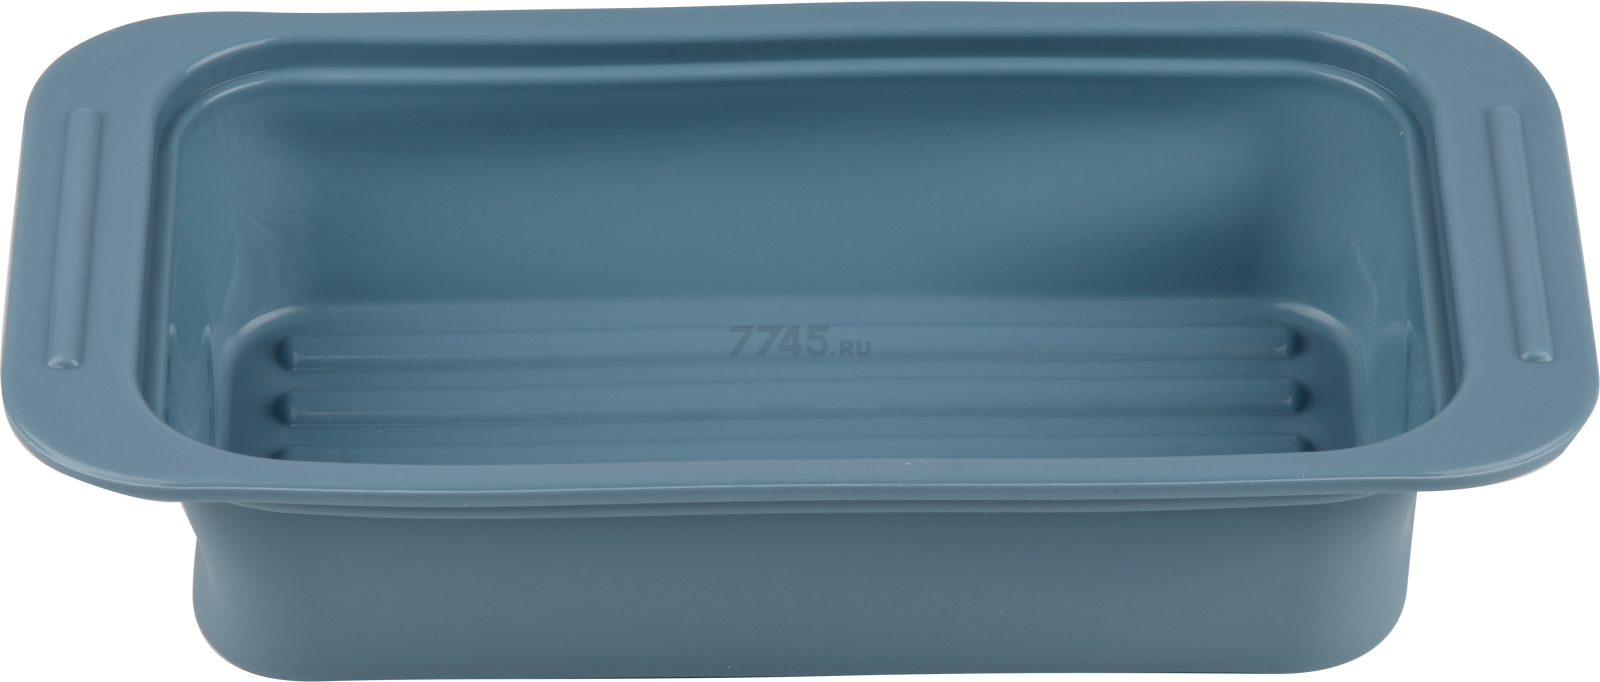 Форма для выпечки силиконовая прямоугольная 25х13,5х5 см PERFECTO LINEA Bluestone серо-голубой (20-013428)